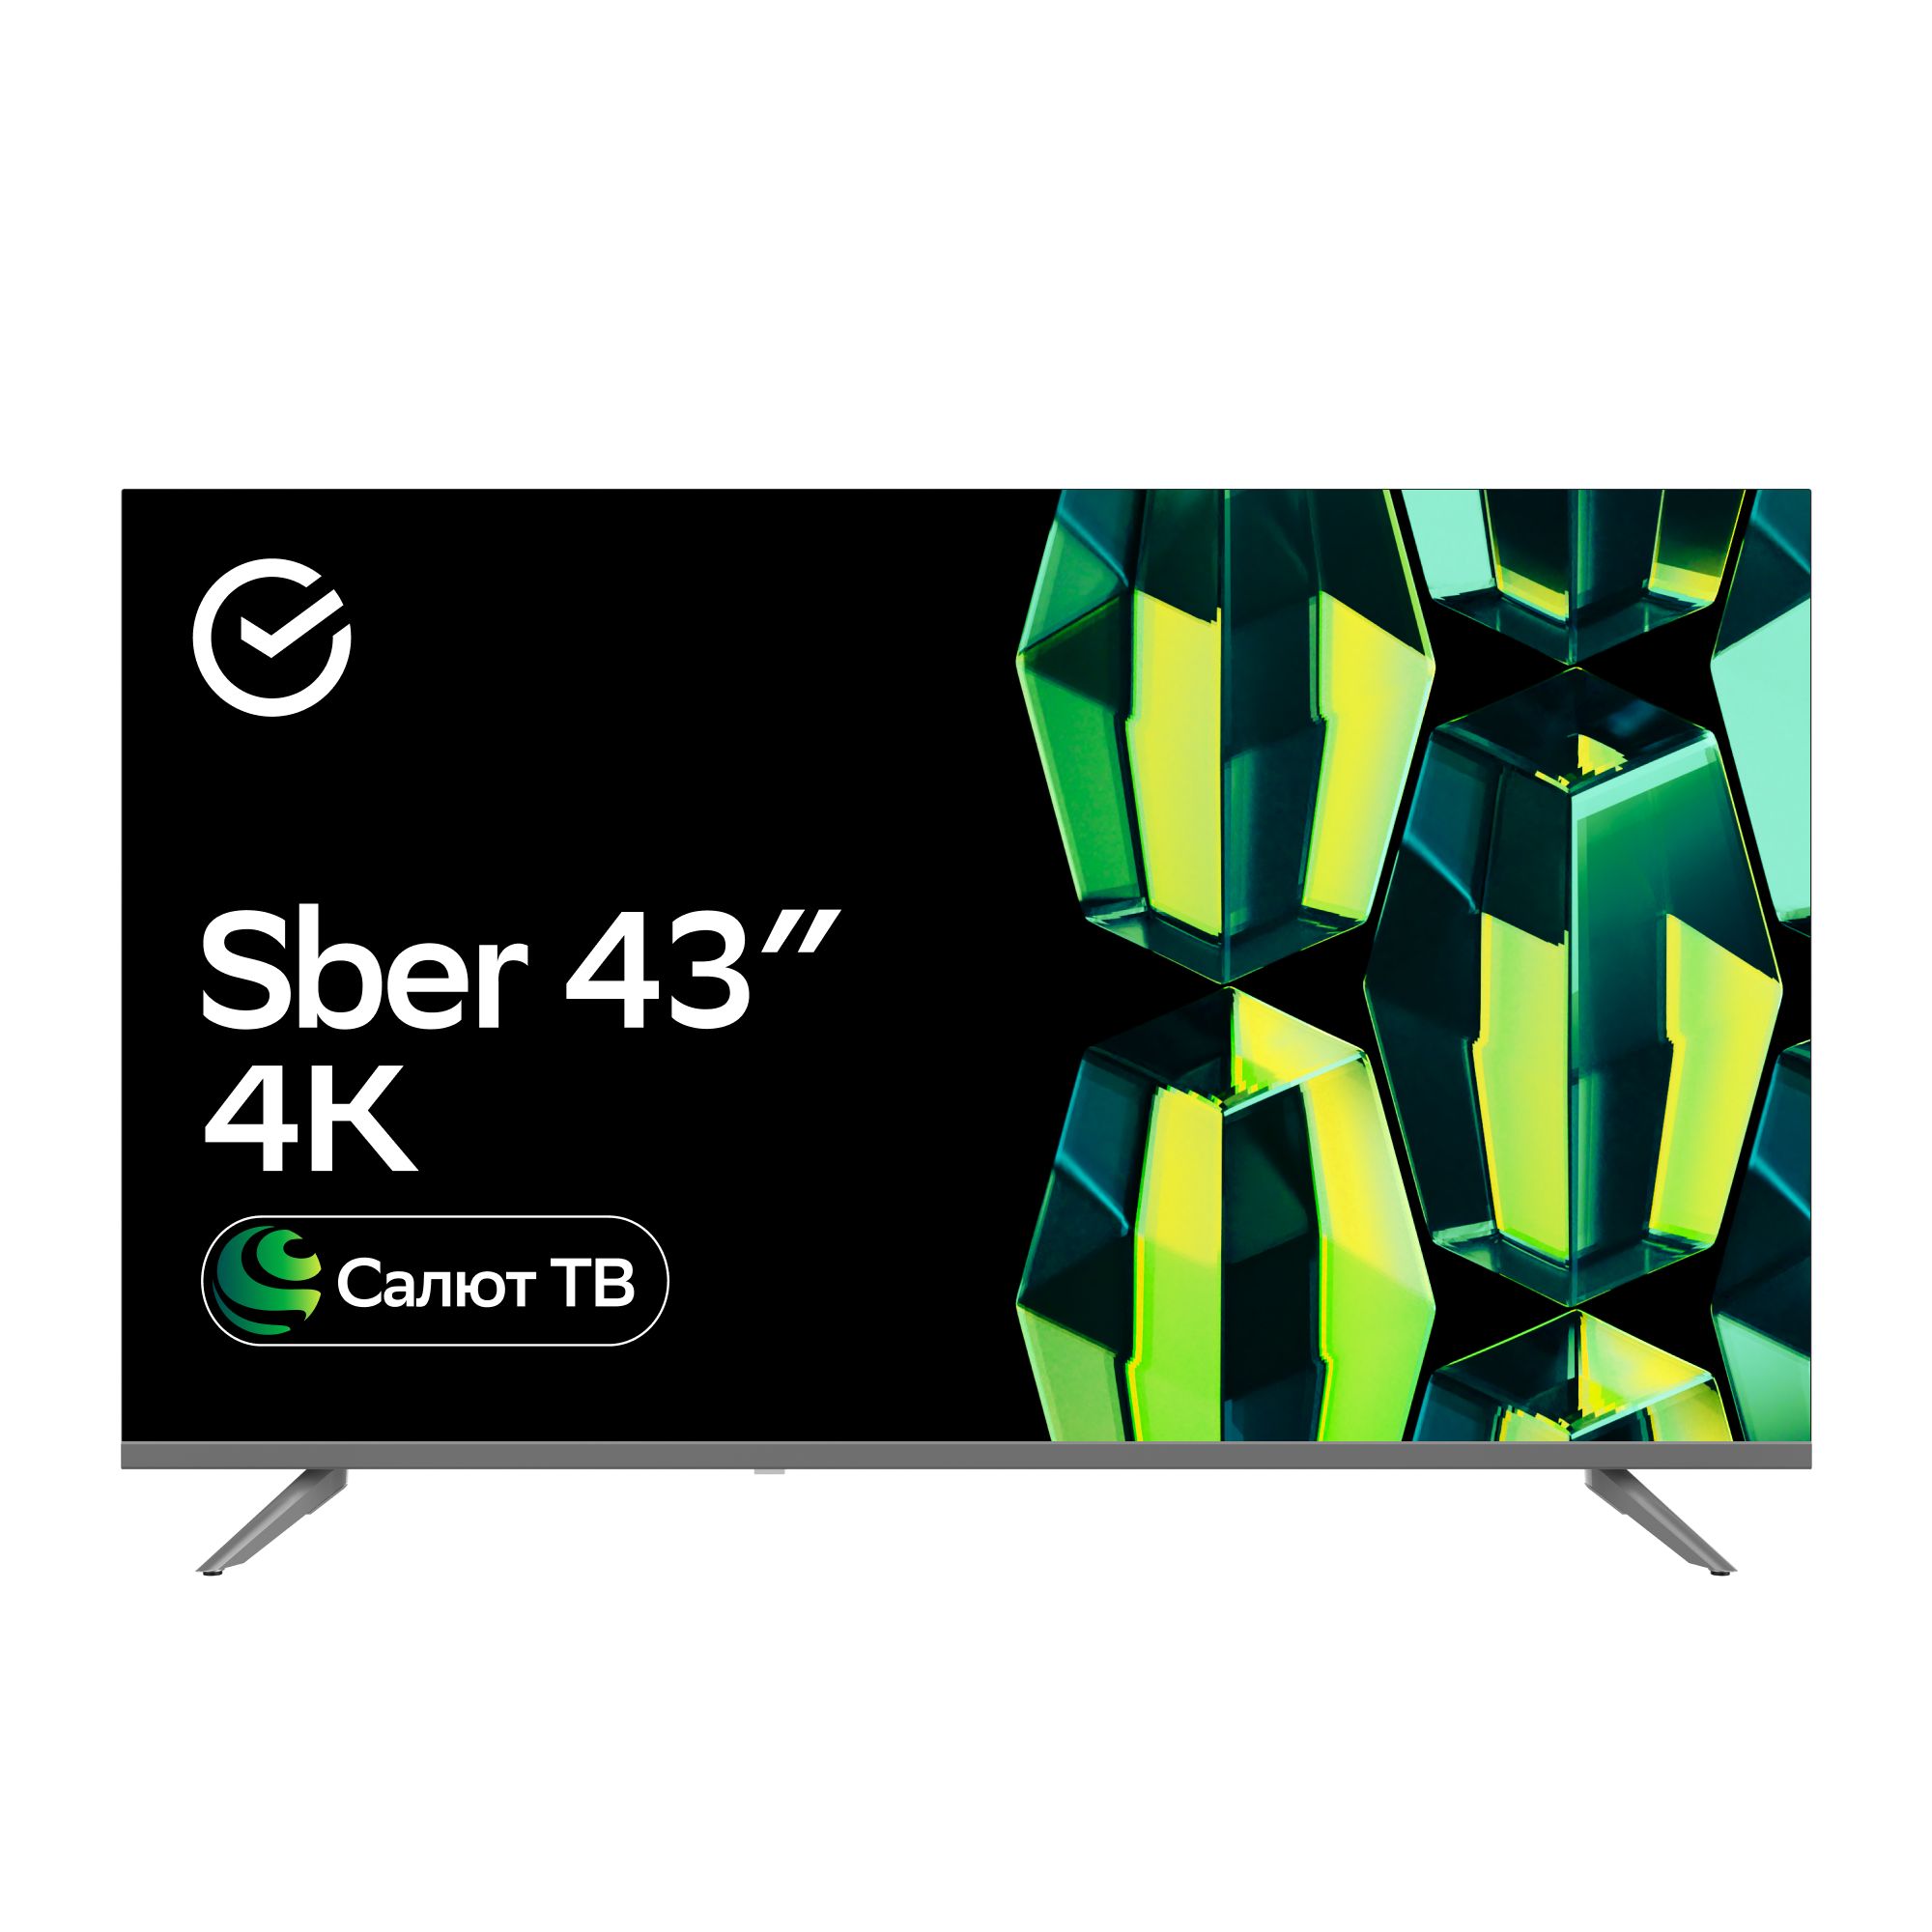 Телевизор Sber SDX-43U4014 2GB, купить в Москве, цены в интернет-магазинах на Мегамаркет